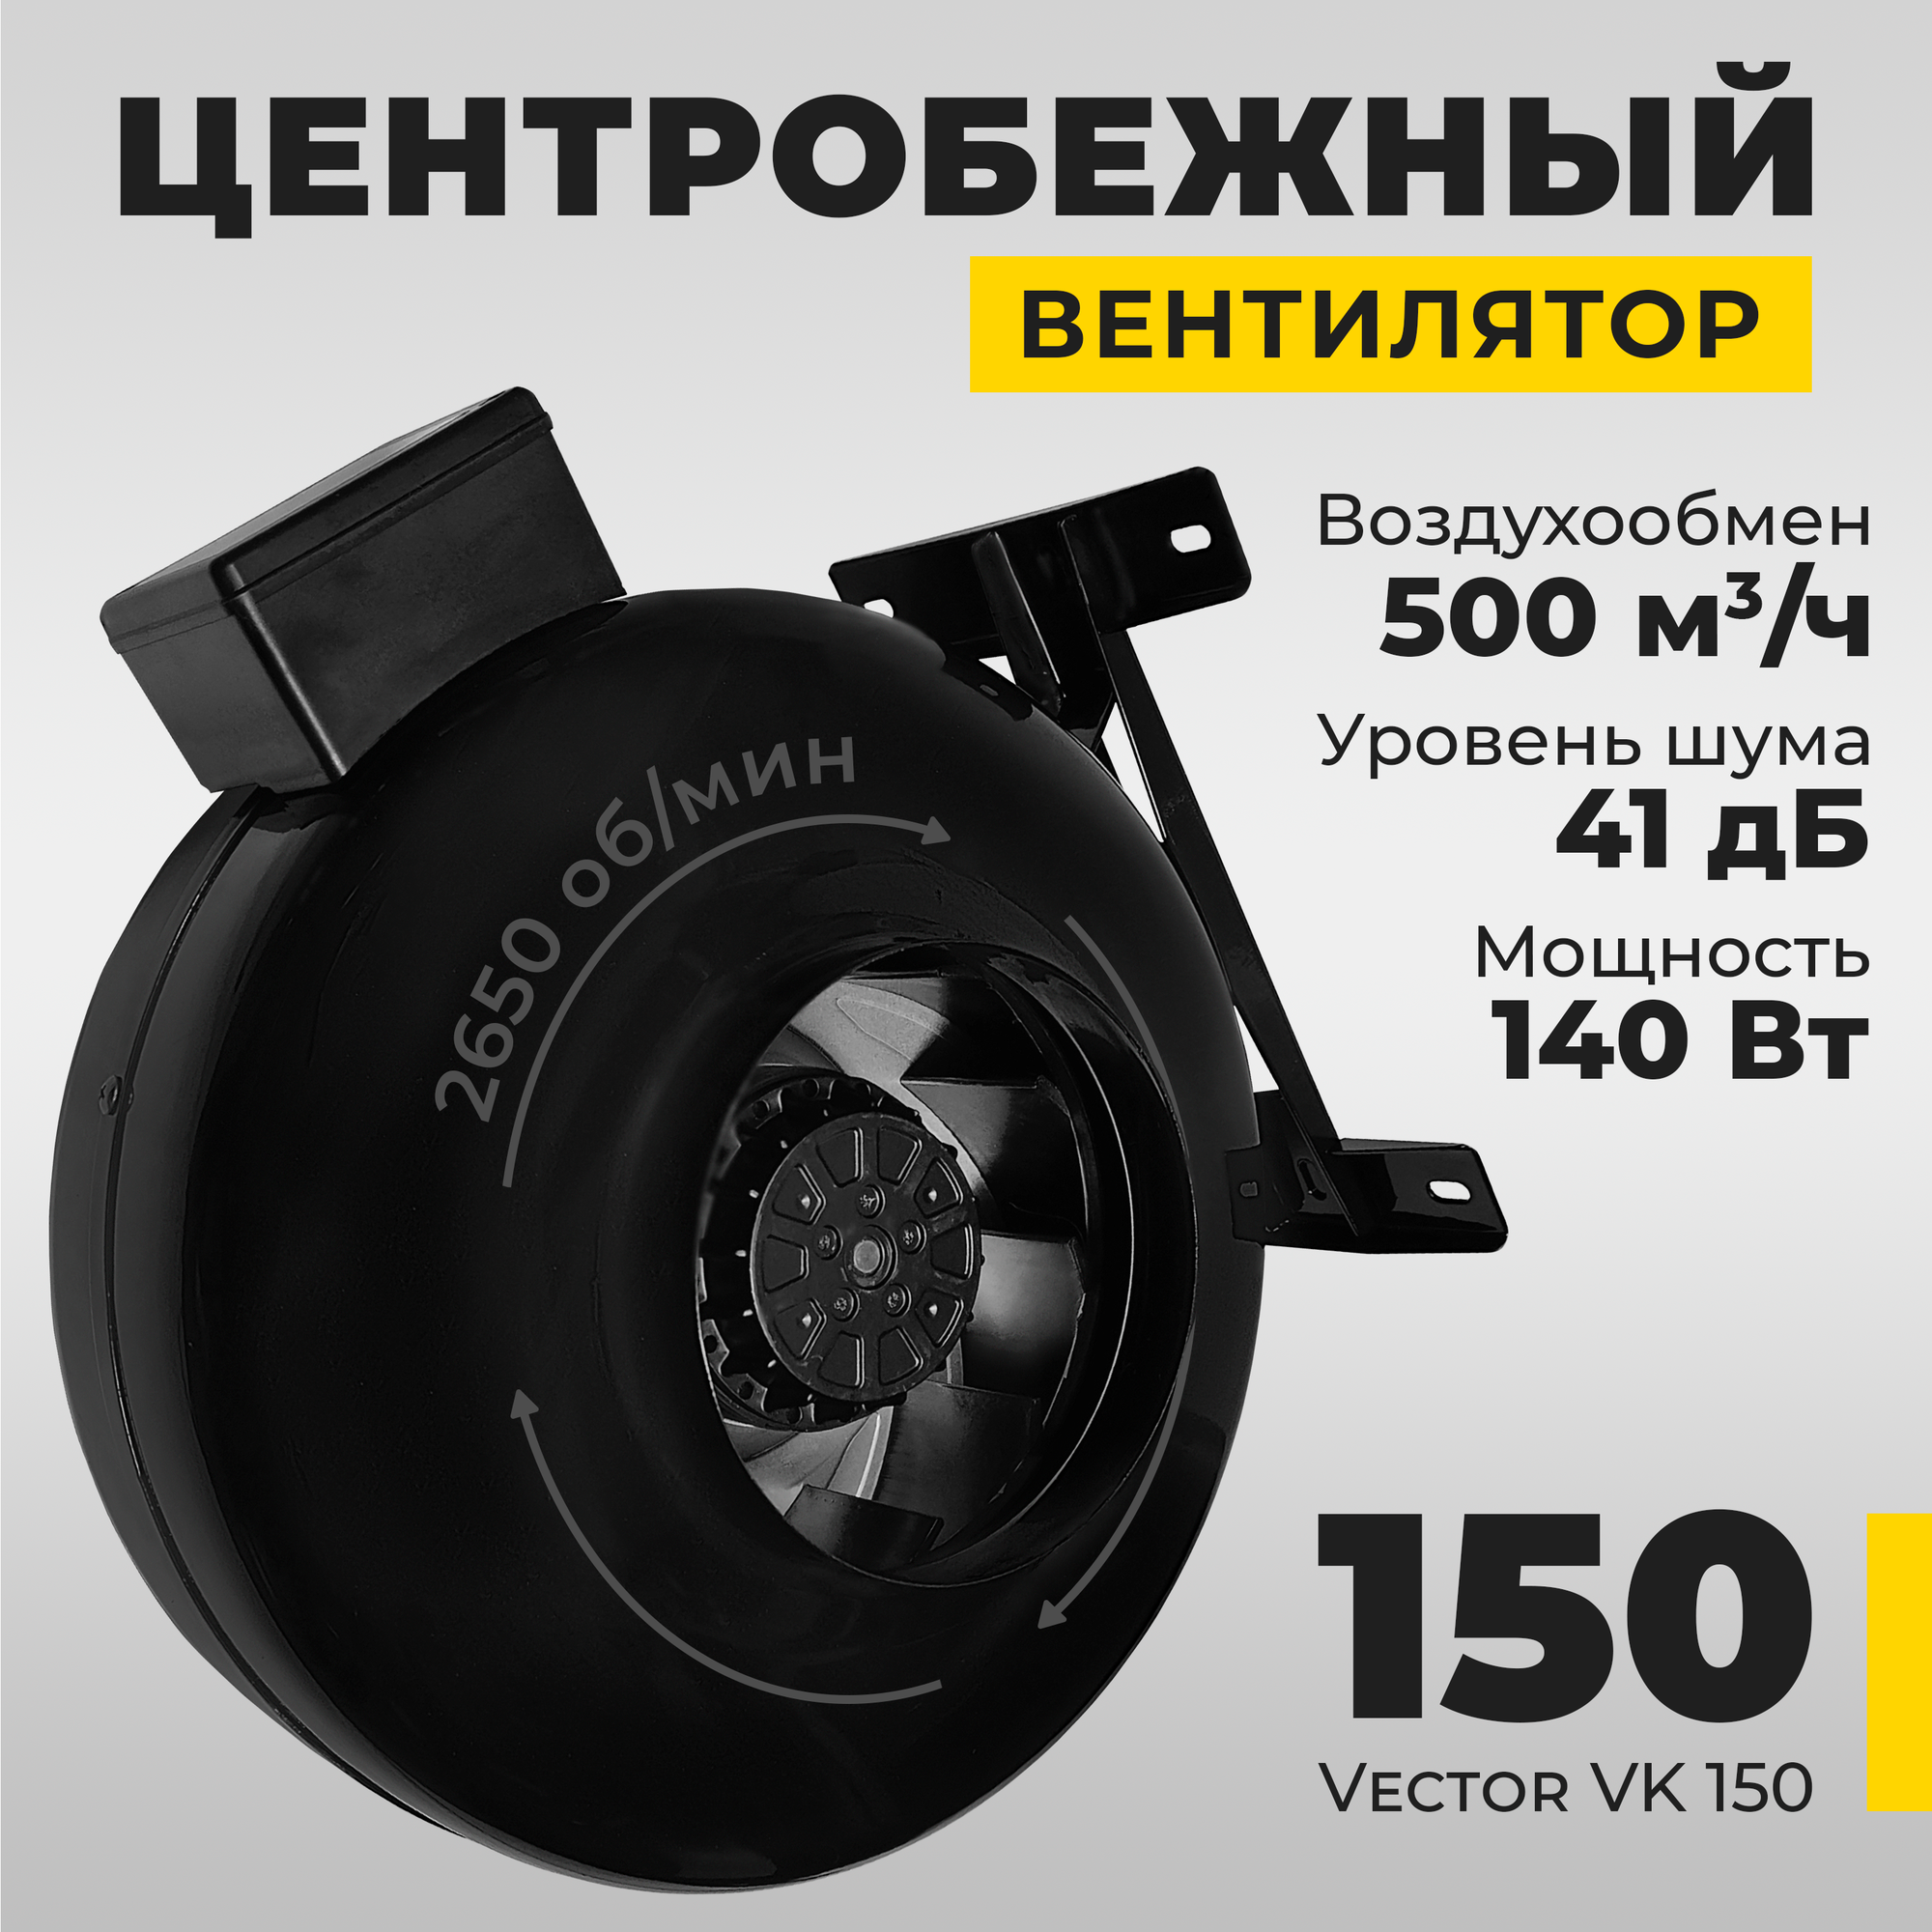 Вентилятор вытяжной Vector VK150 промышленный  воздухообмен 500 м3/ч 140Вт черный